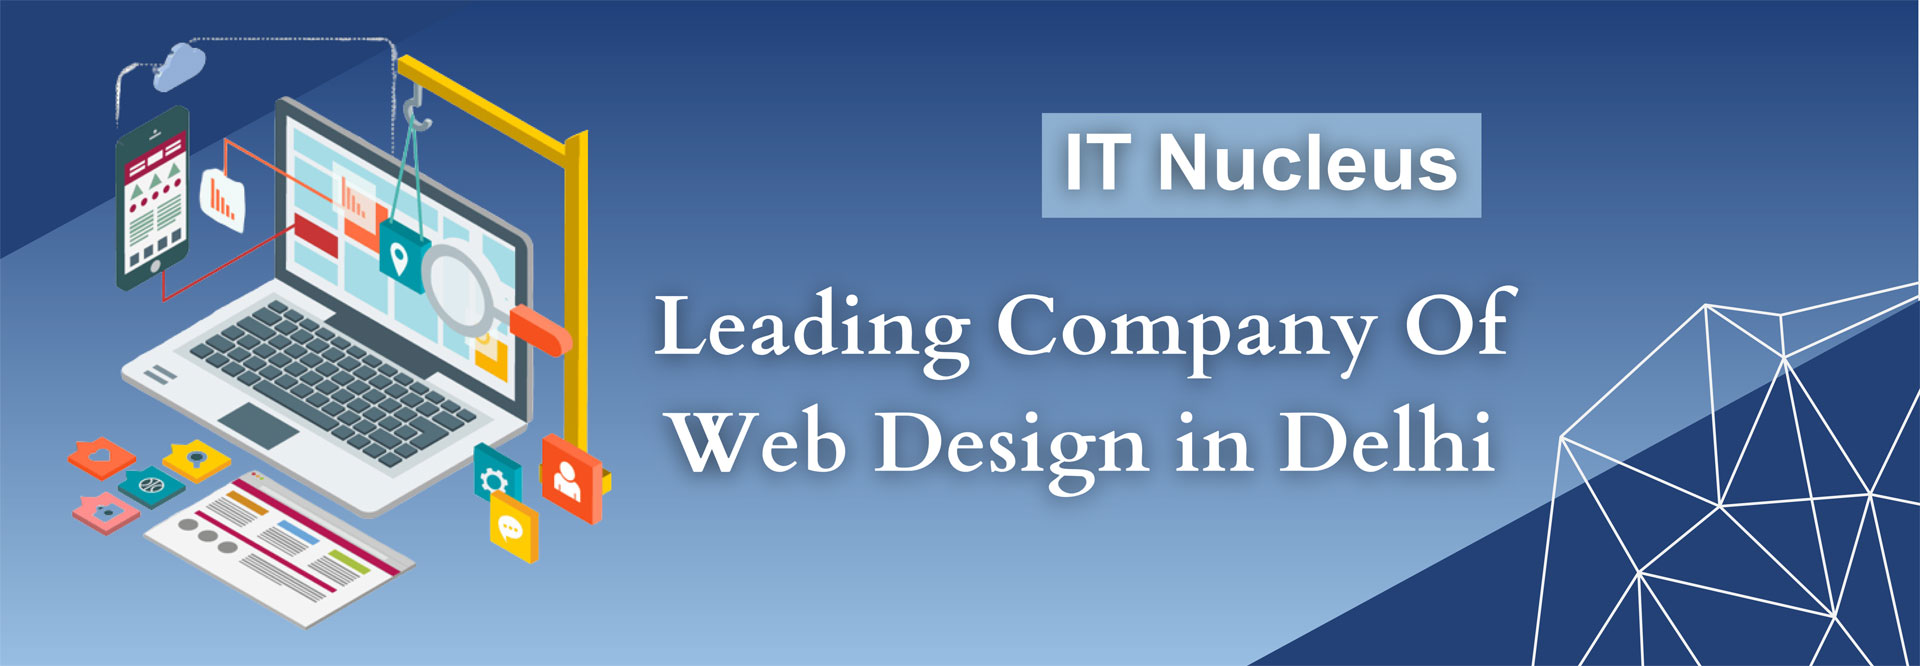 IT Nucleus: Leading Company Of Web Design in Delhi